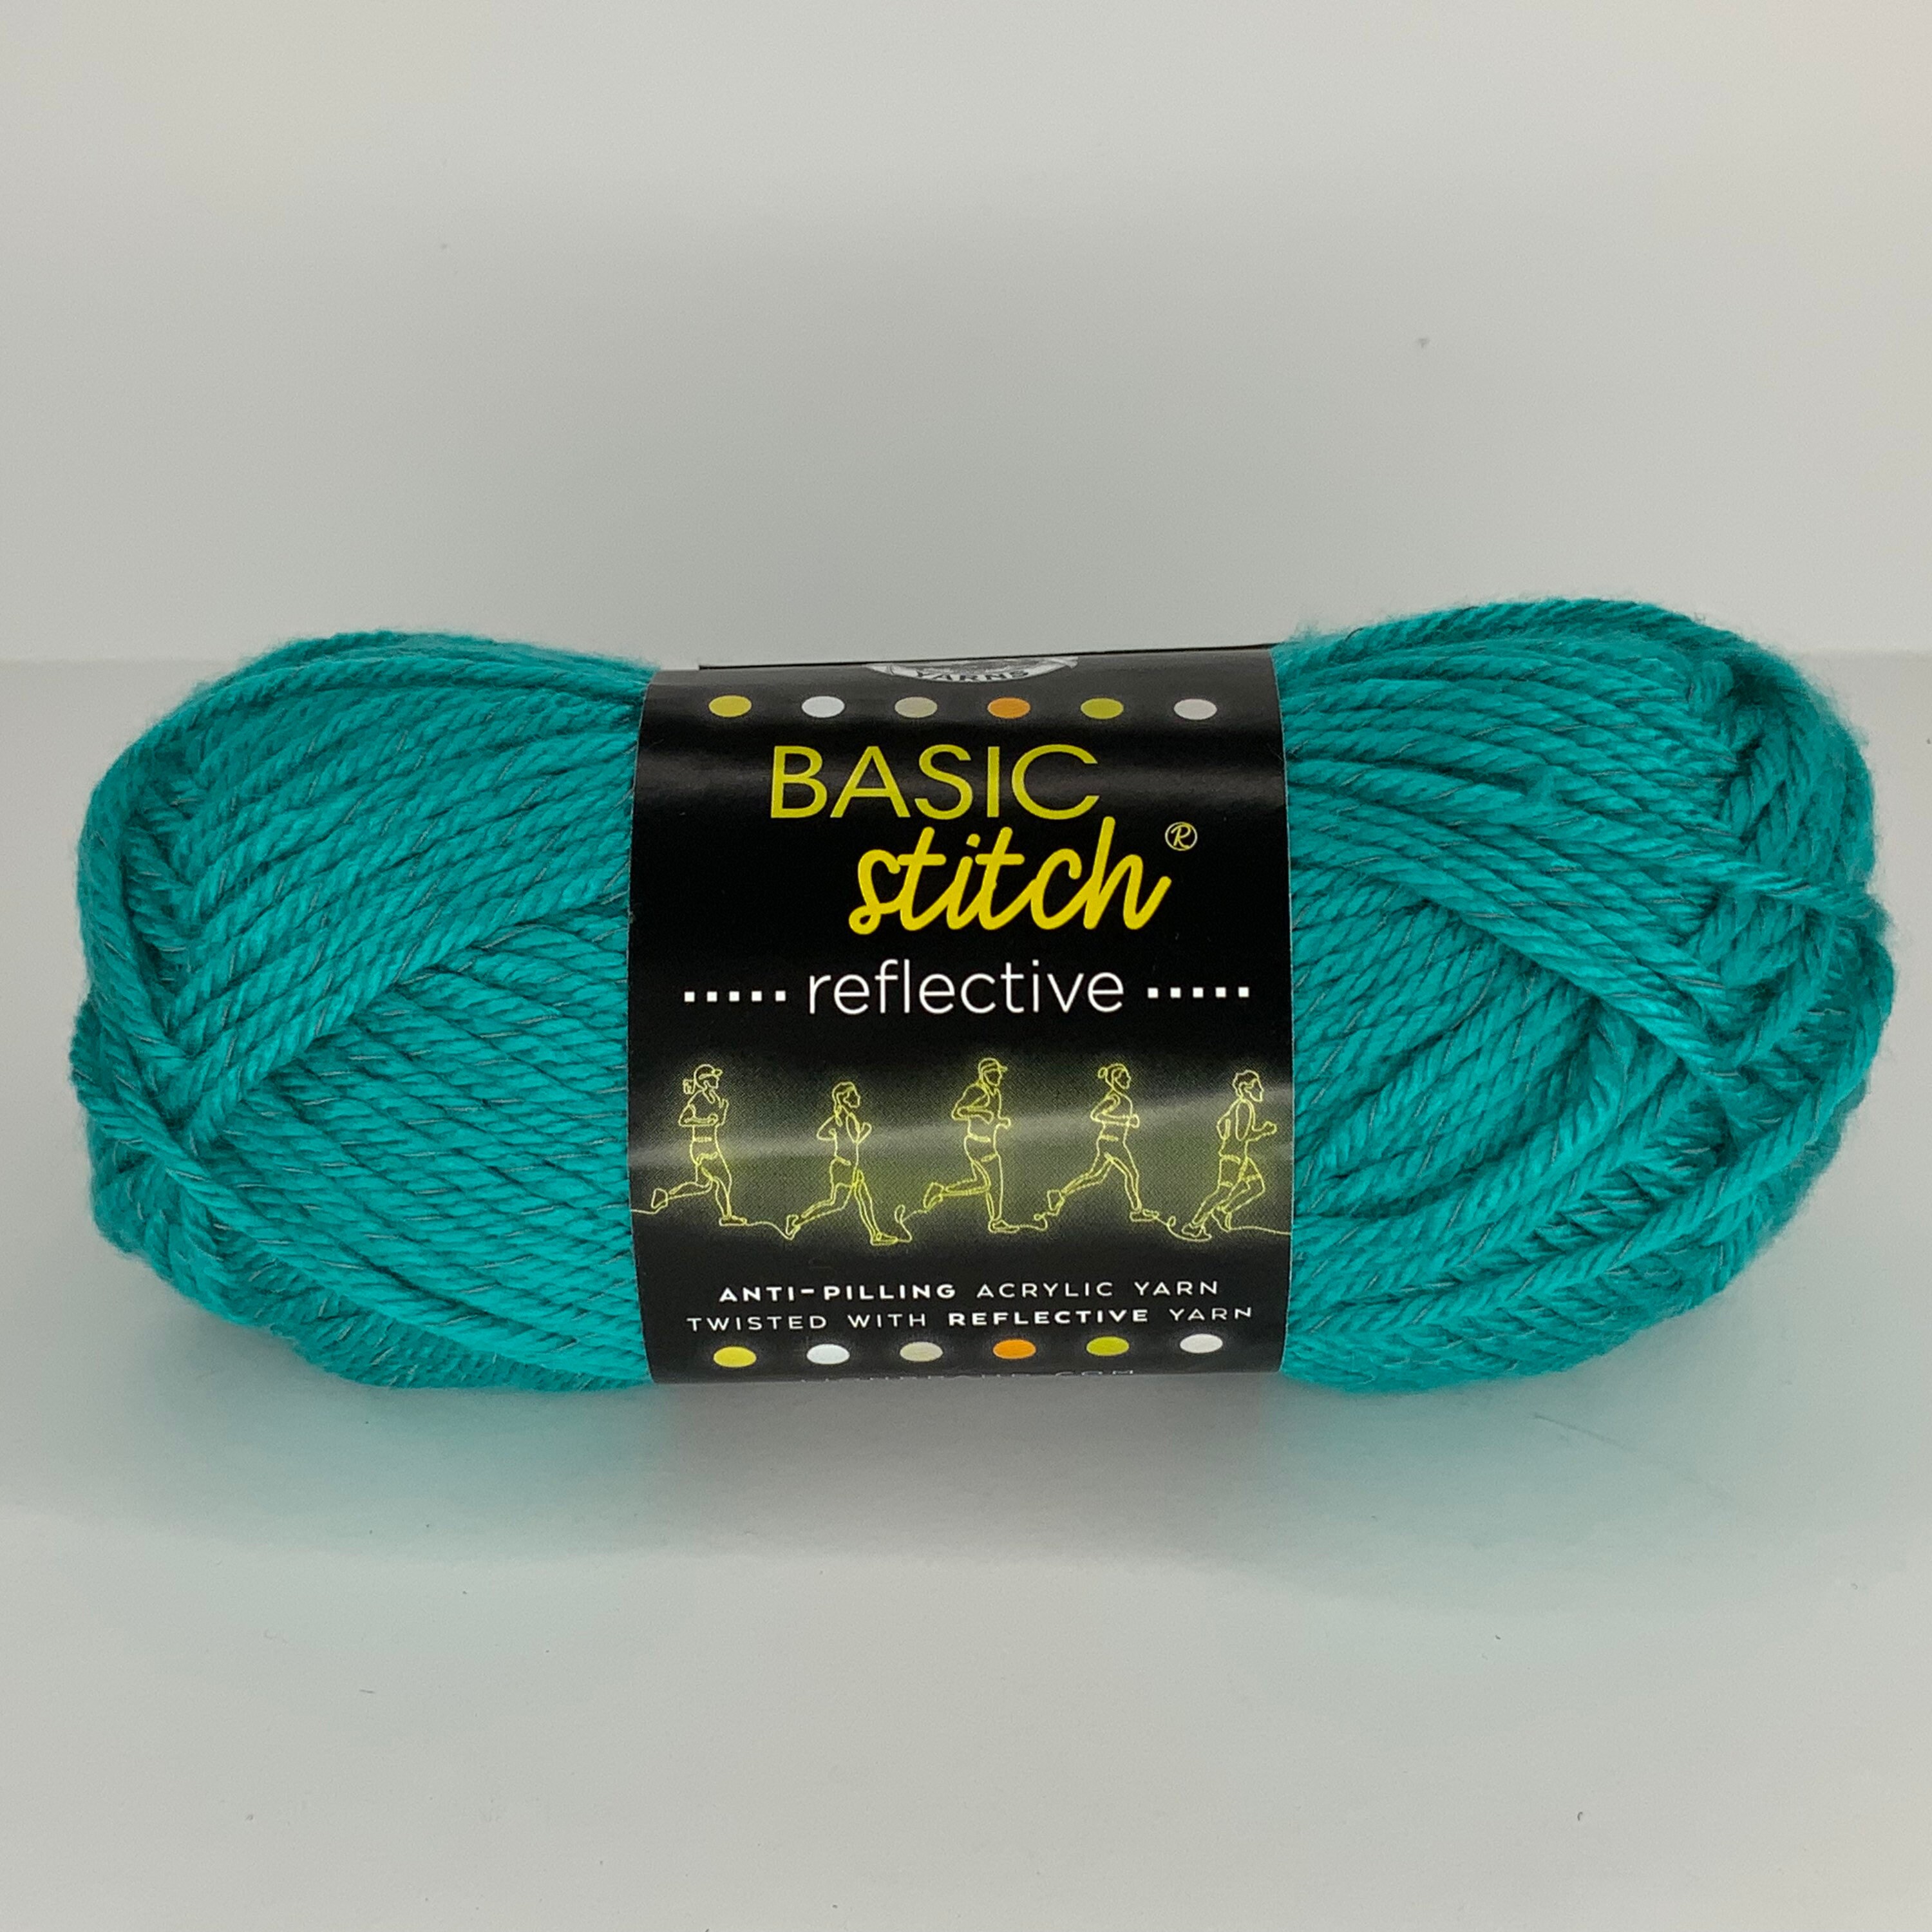 Lion Brand Basic Stitch Reflective Yarn Anti Pilling Platinum Gray New!